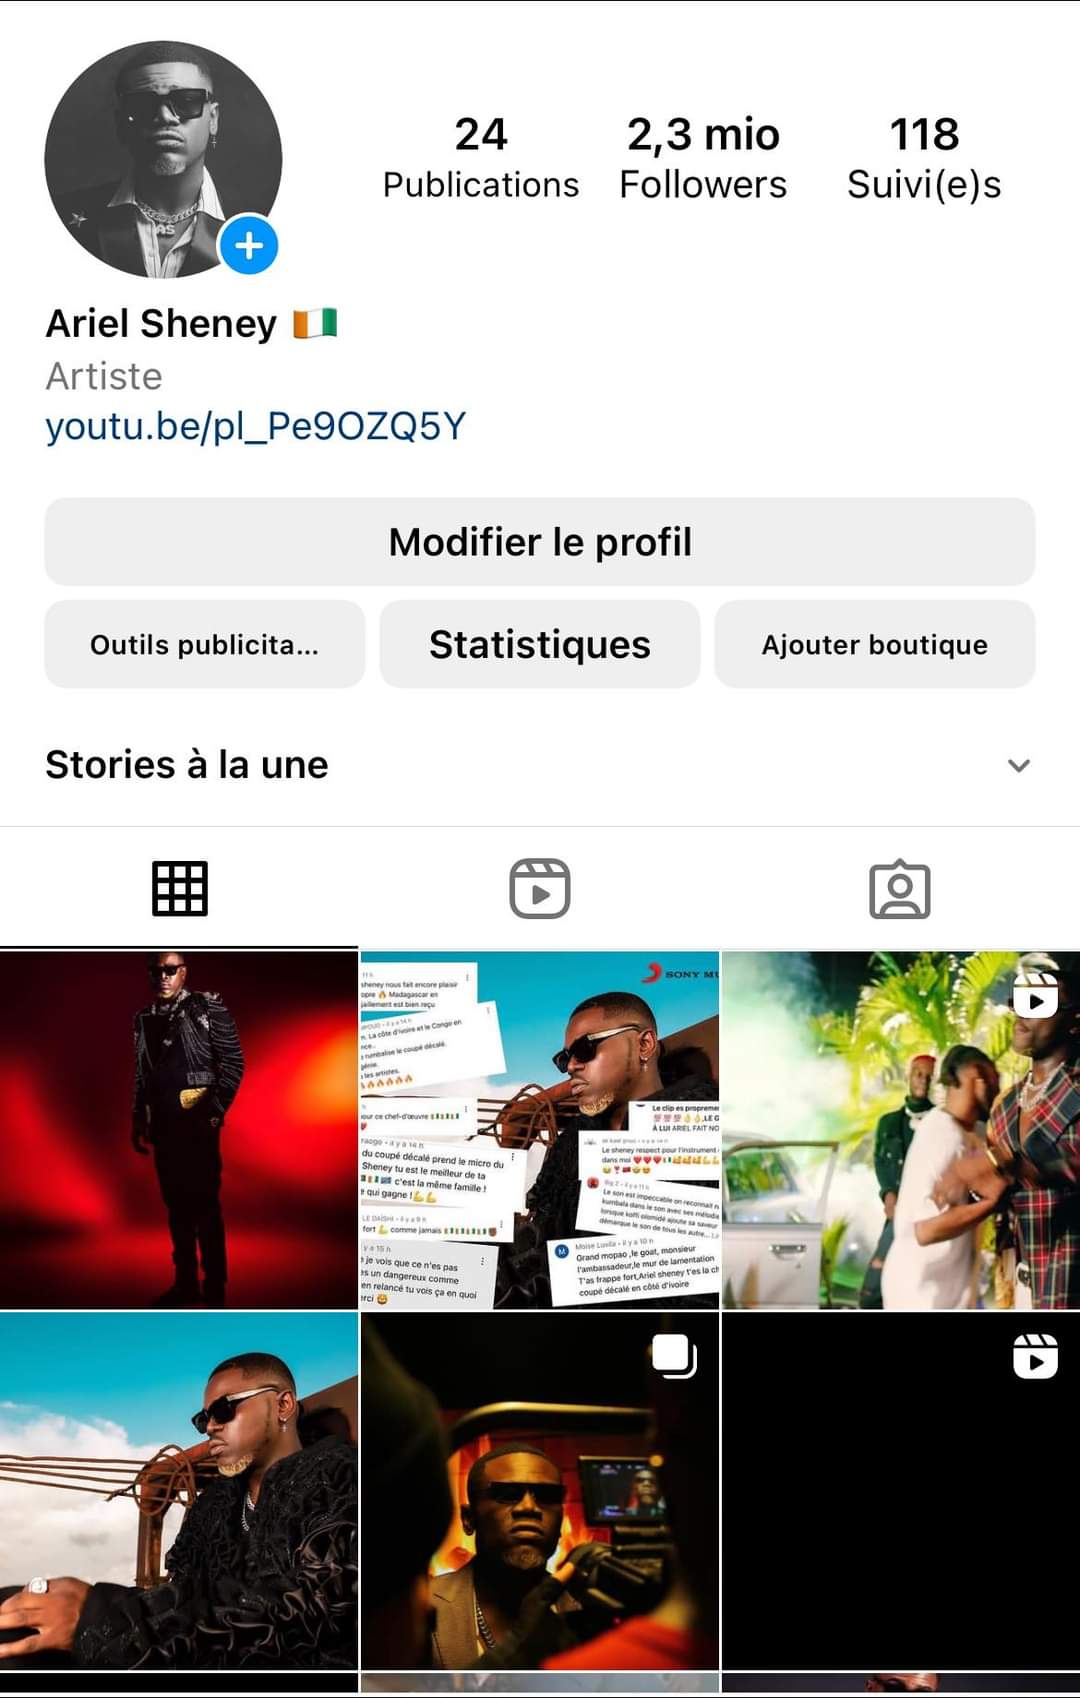 Suspendu il y a environ 2 semaines, Ariel Sheney est de nouveau sur Instagram avec son ancien compte comptabilisant 2,3 millions d'abonnés